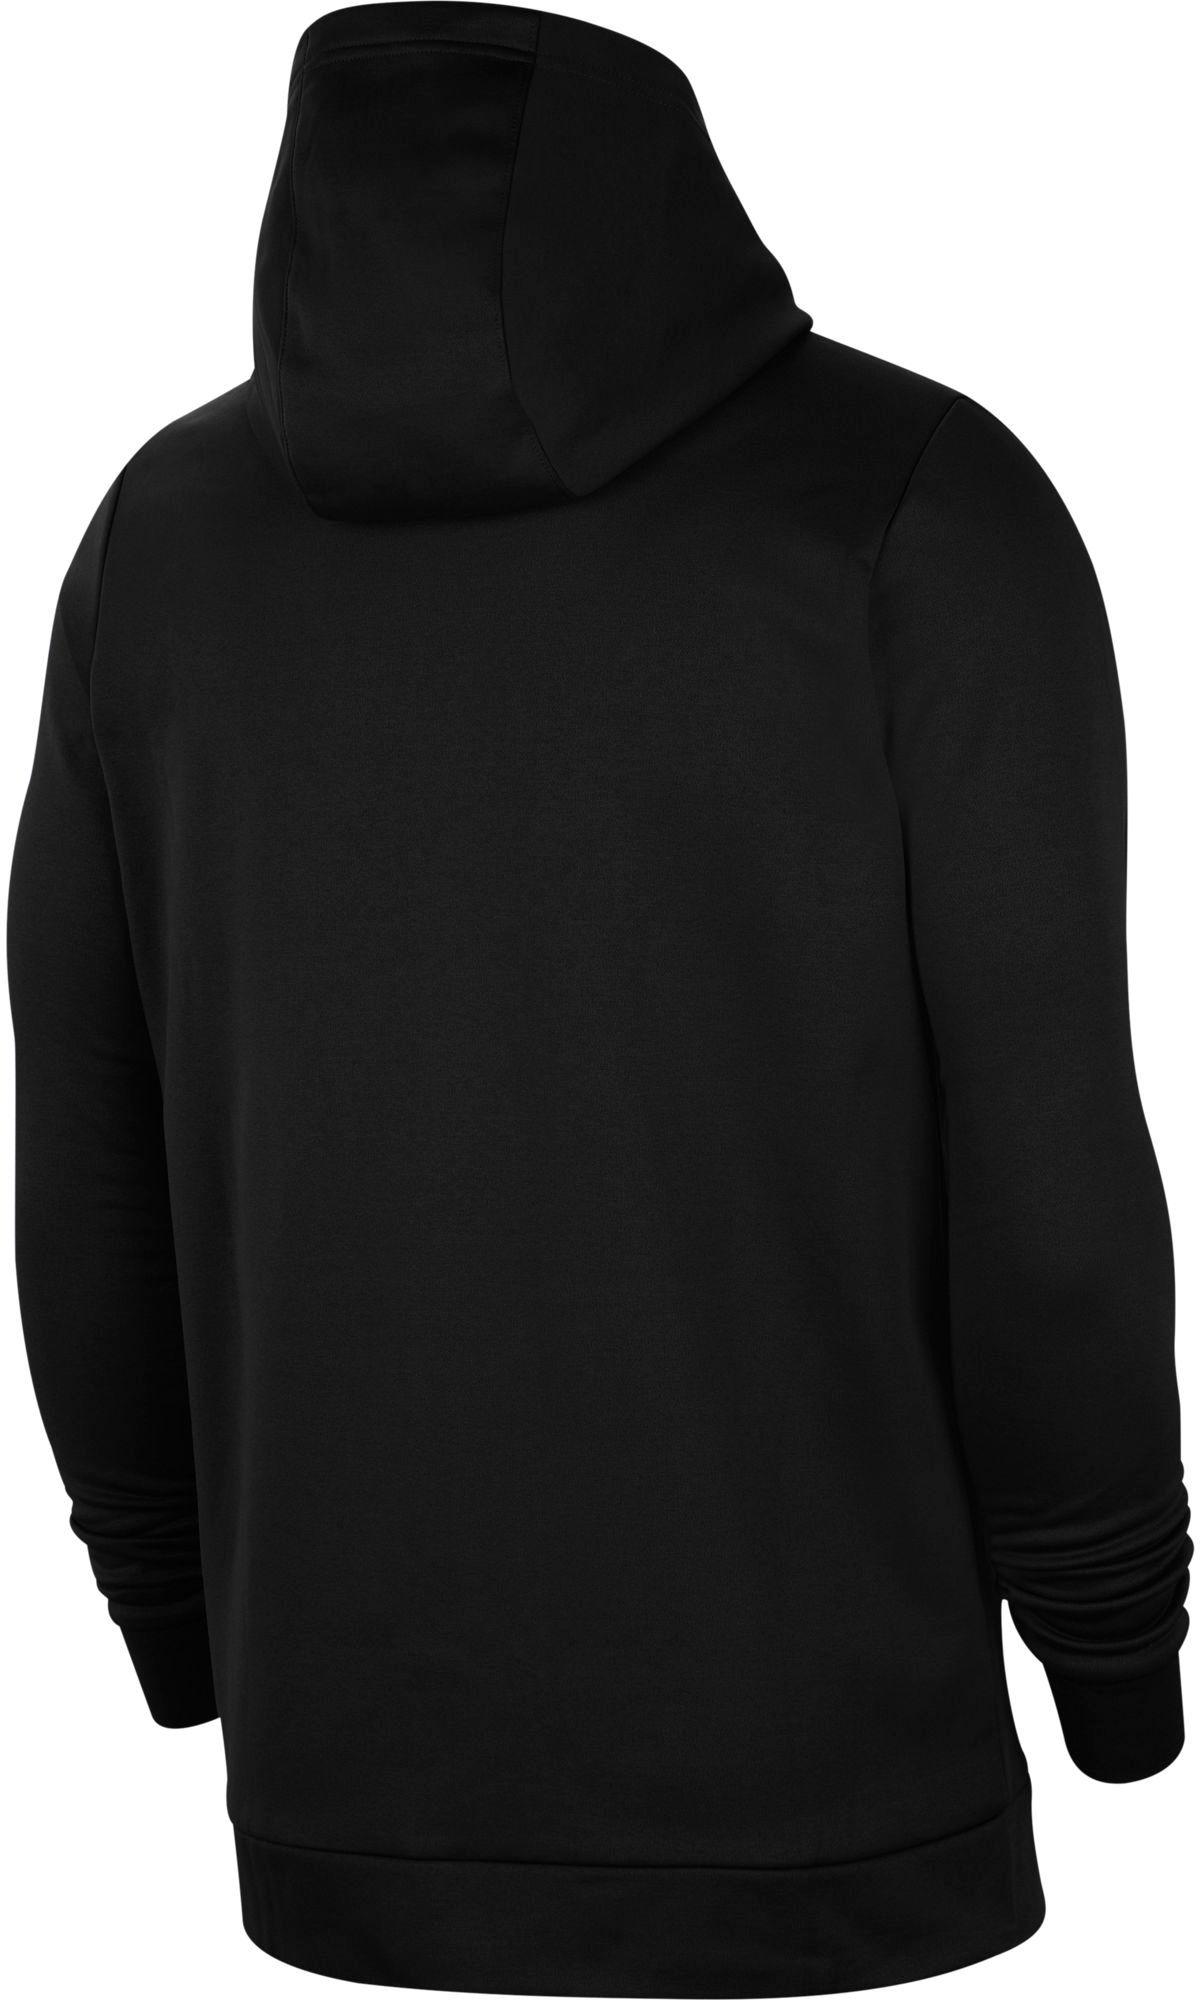 Nike Therma Full-zip Training Hoodie in Black/Dark Grey (Black) for Men ...